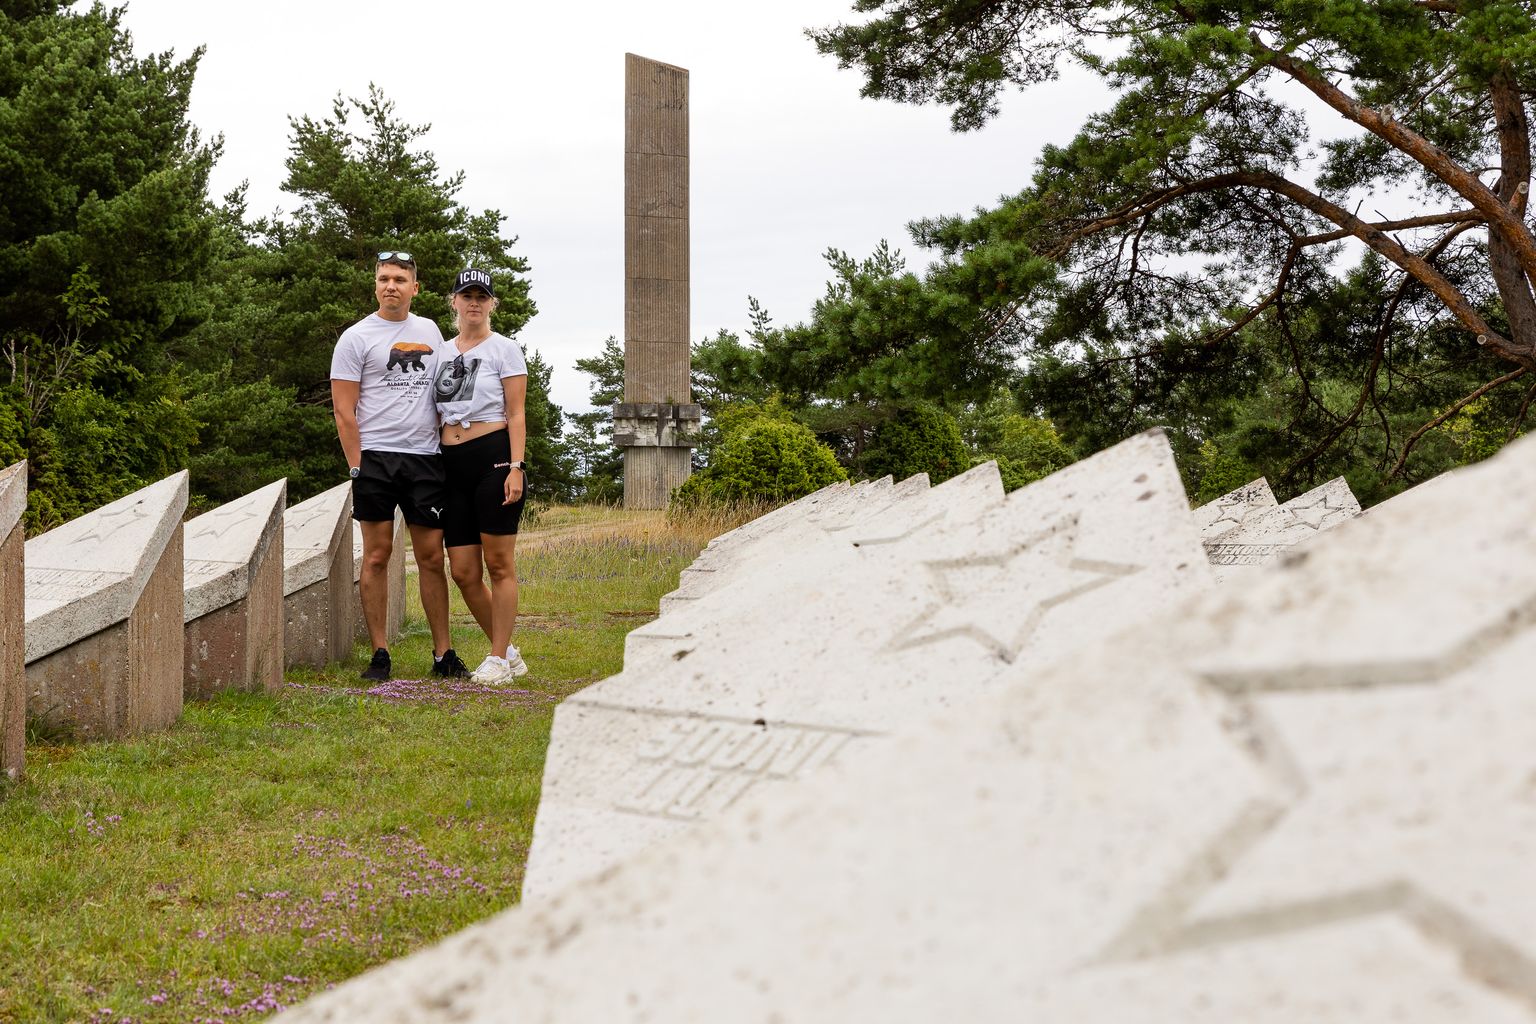 SEE ON JU AJALUGU: Ühendkuningriigist Saaremaad avastama tulnud Roman ja Irina arvasid, et Tehumardi monument peaks ikkagi paika jääma.